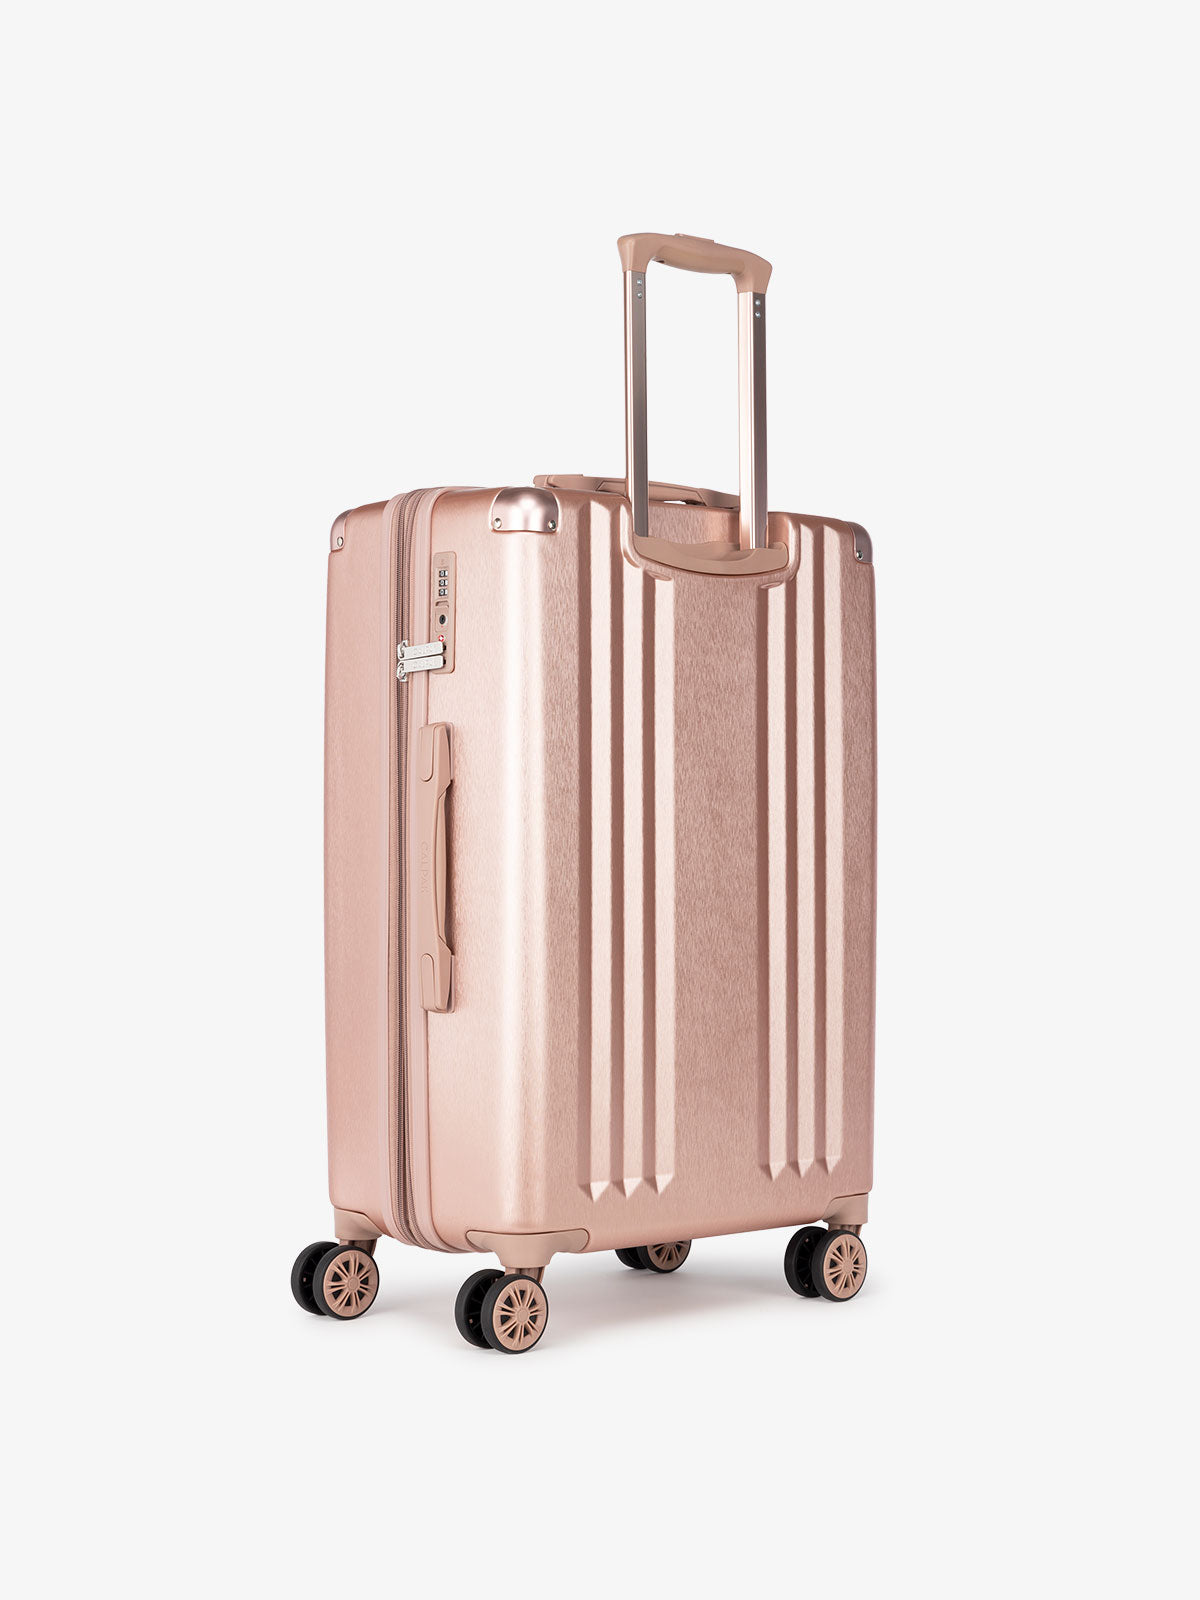 CALPAK Evry Medium Luggage in Pistachio | 24.5